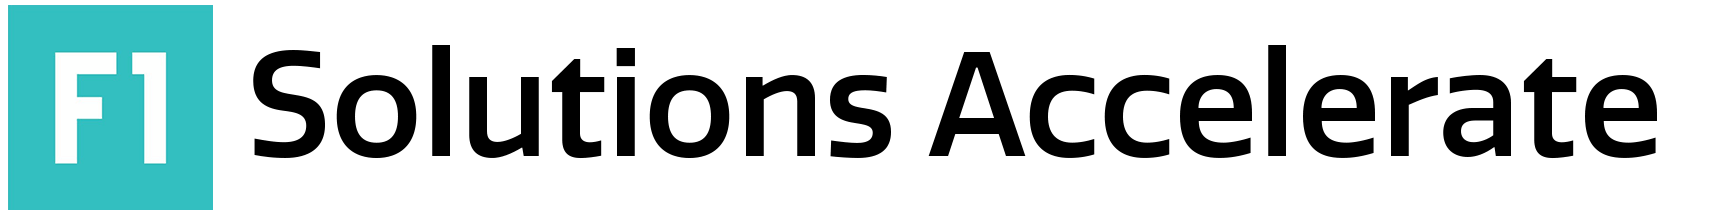 F1 Accelerate Logo